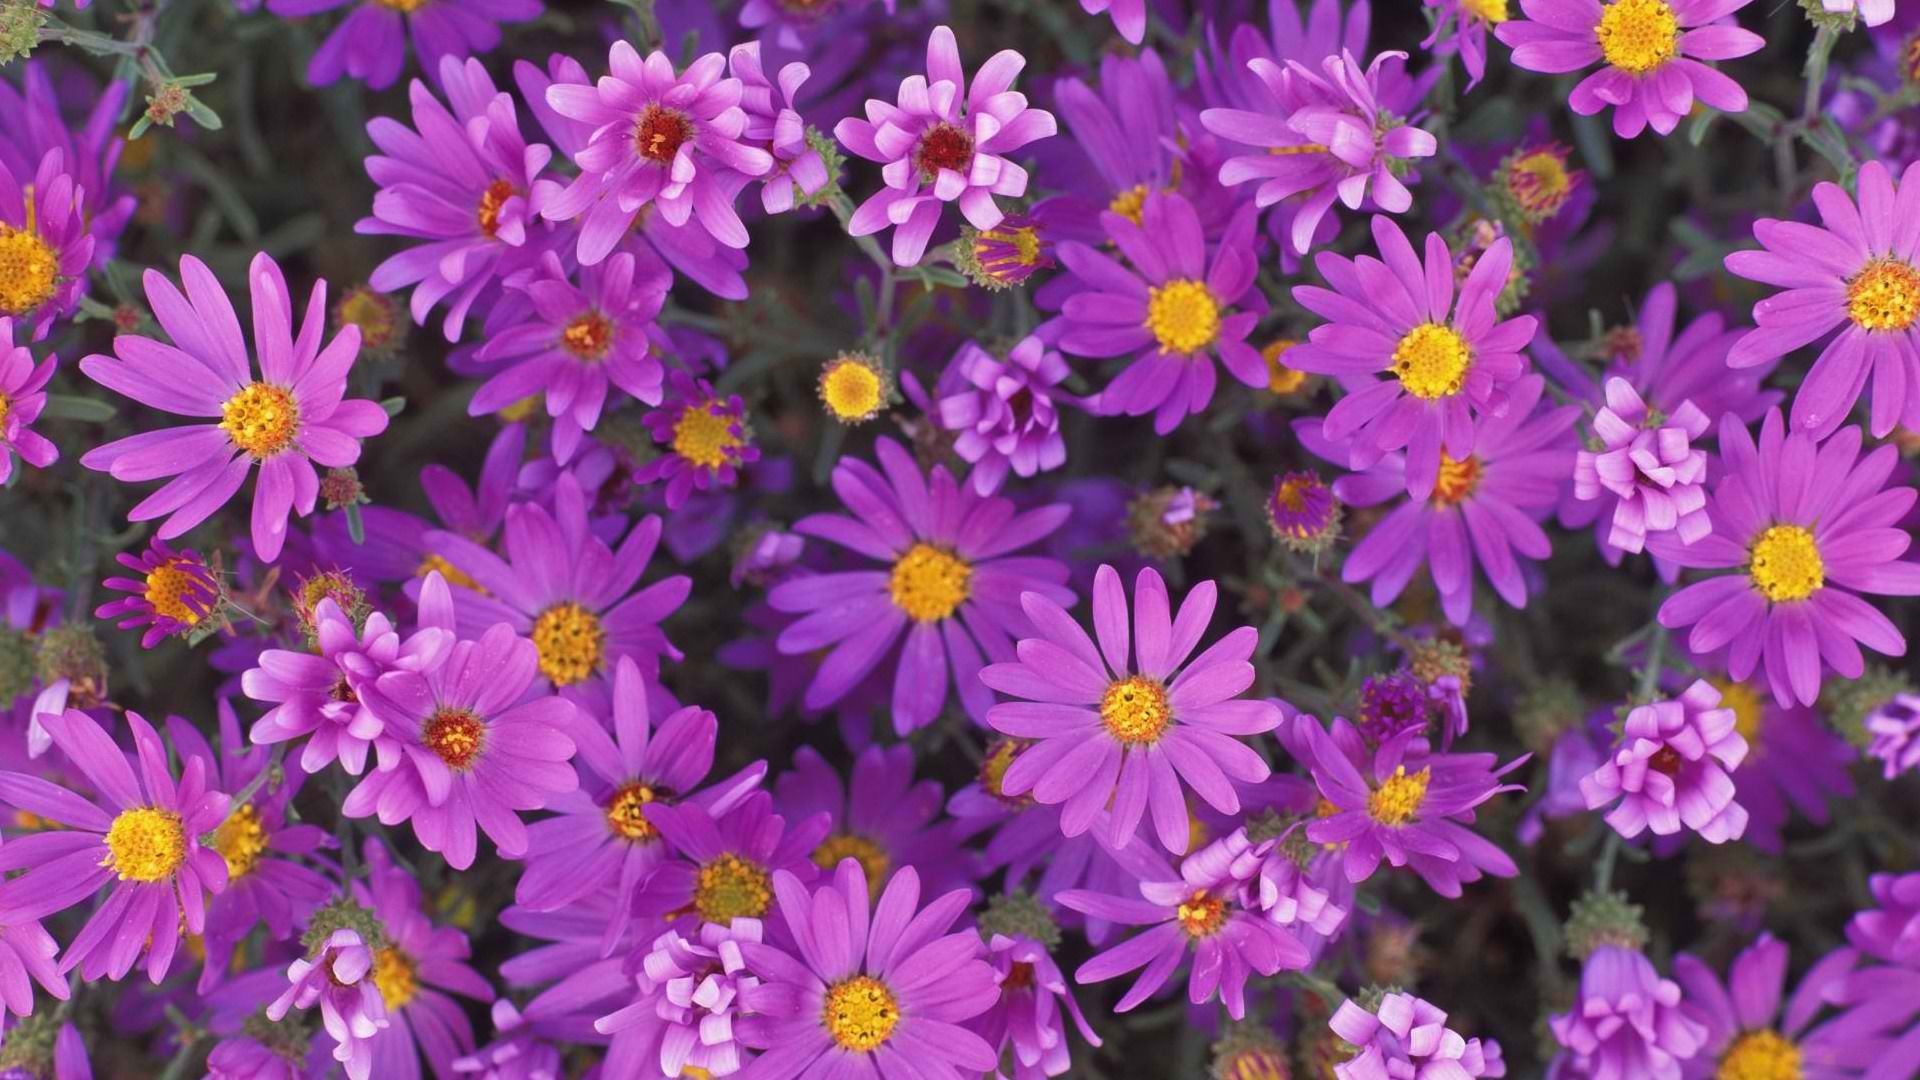 Descarga gratuita de fondo de pantalla para móvil de Naturaleza, Flores, Flor, De Cerca, Margarita, Flor Purpura, Tierra/naturaleza.